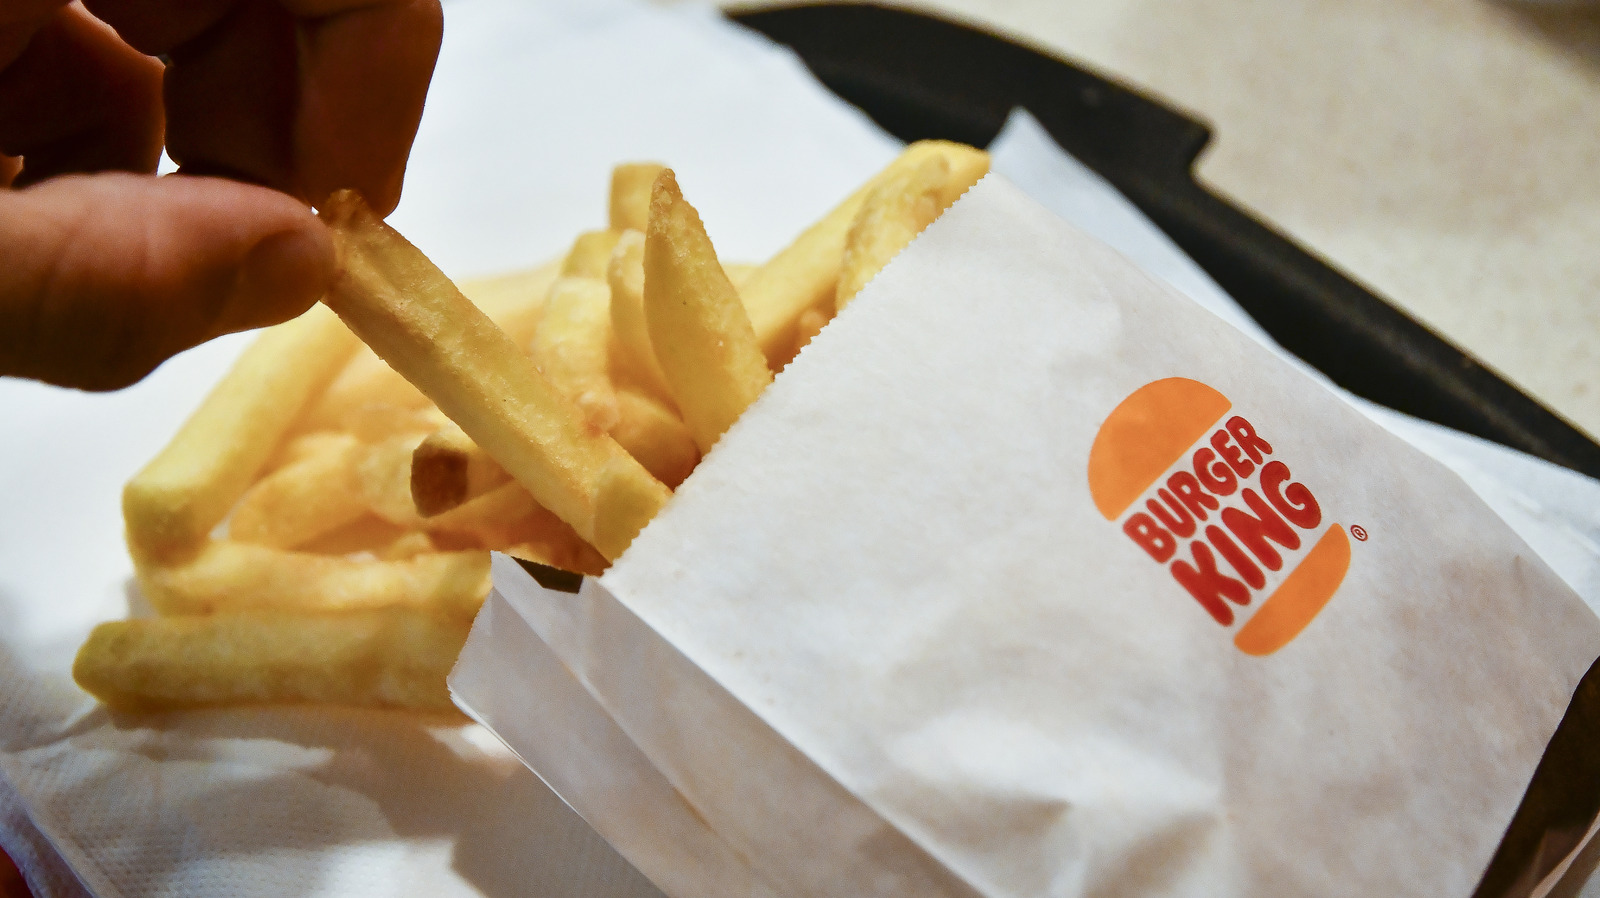 La franquicia en quiebra Burger King se deshace de casi 6 tiendas